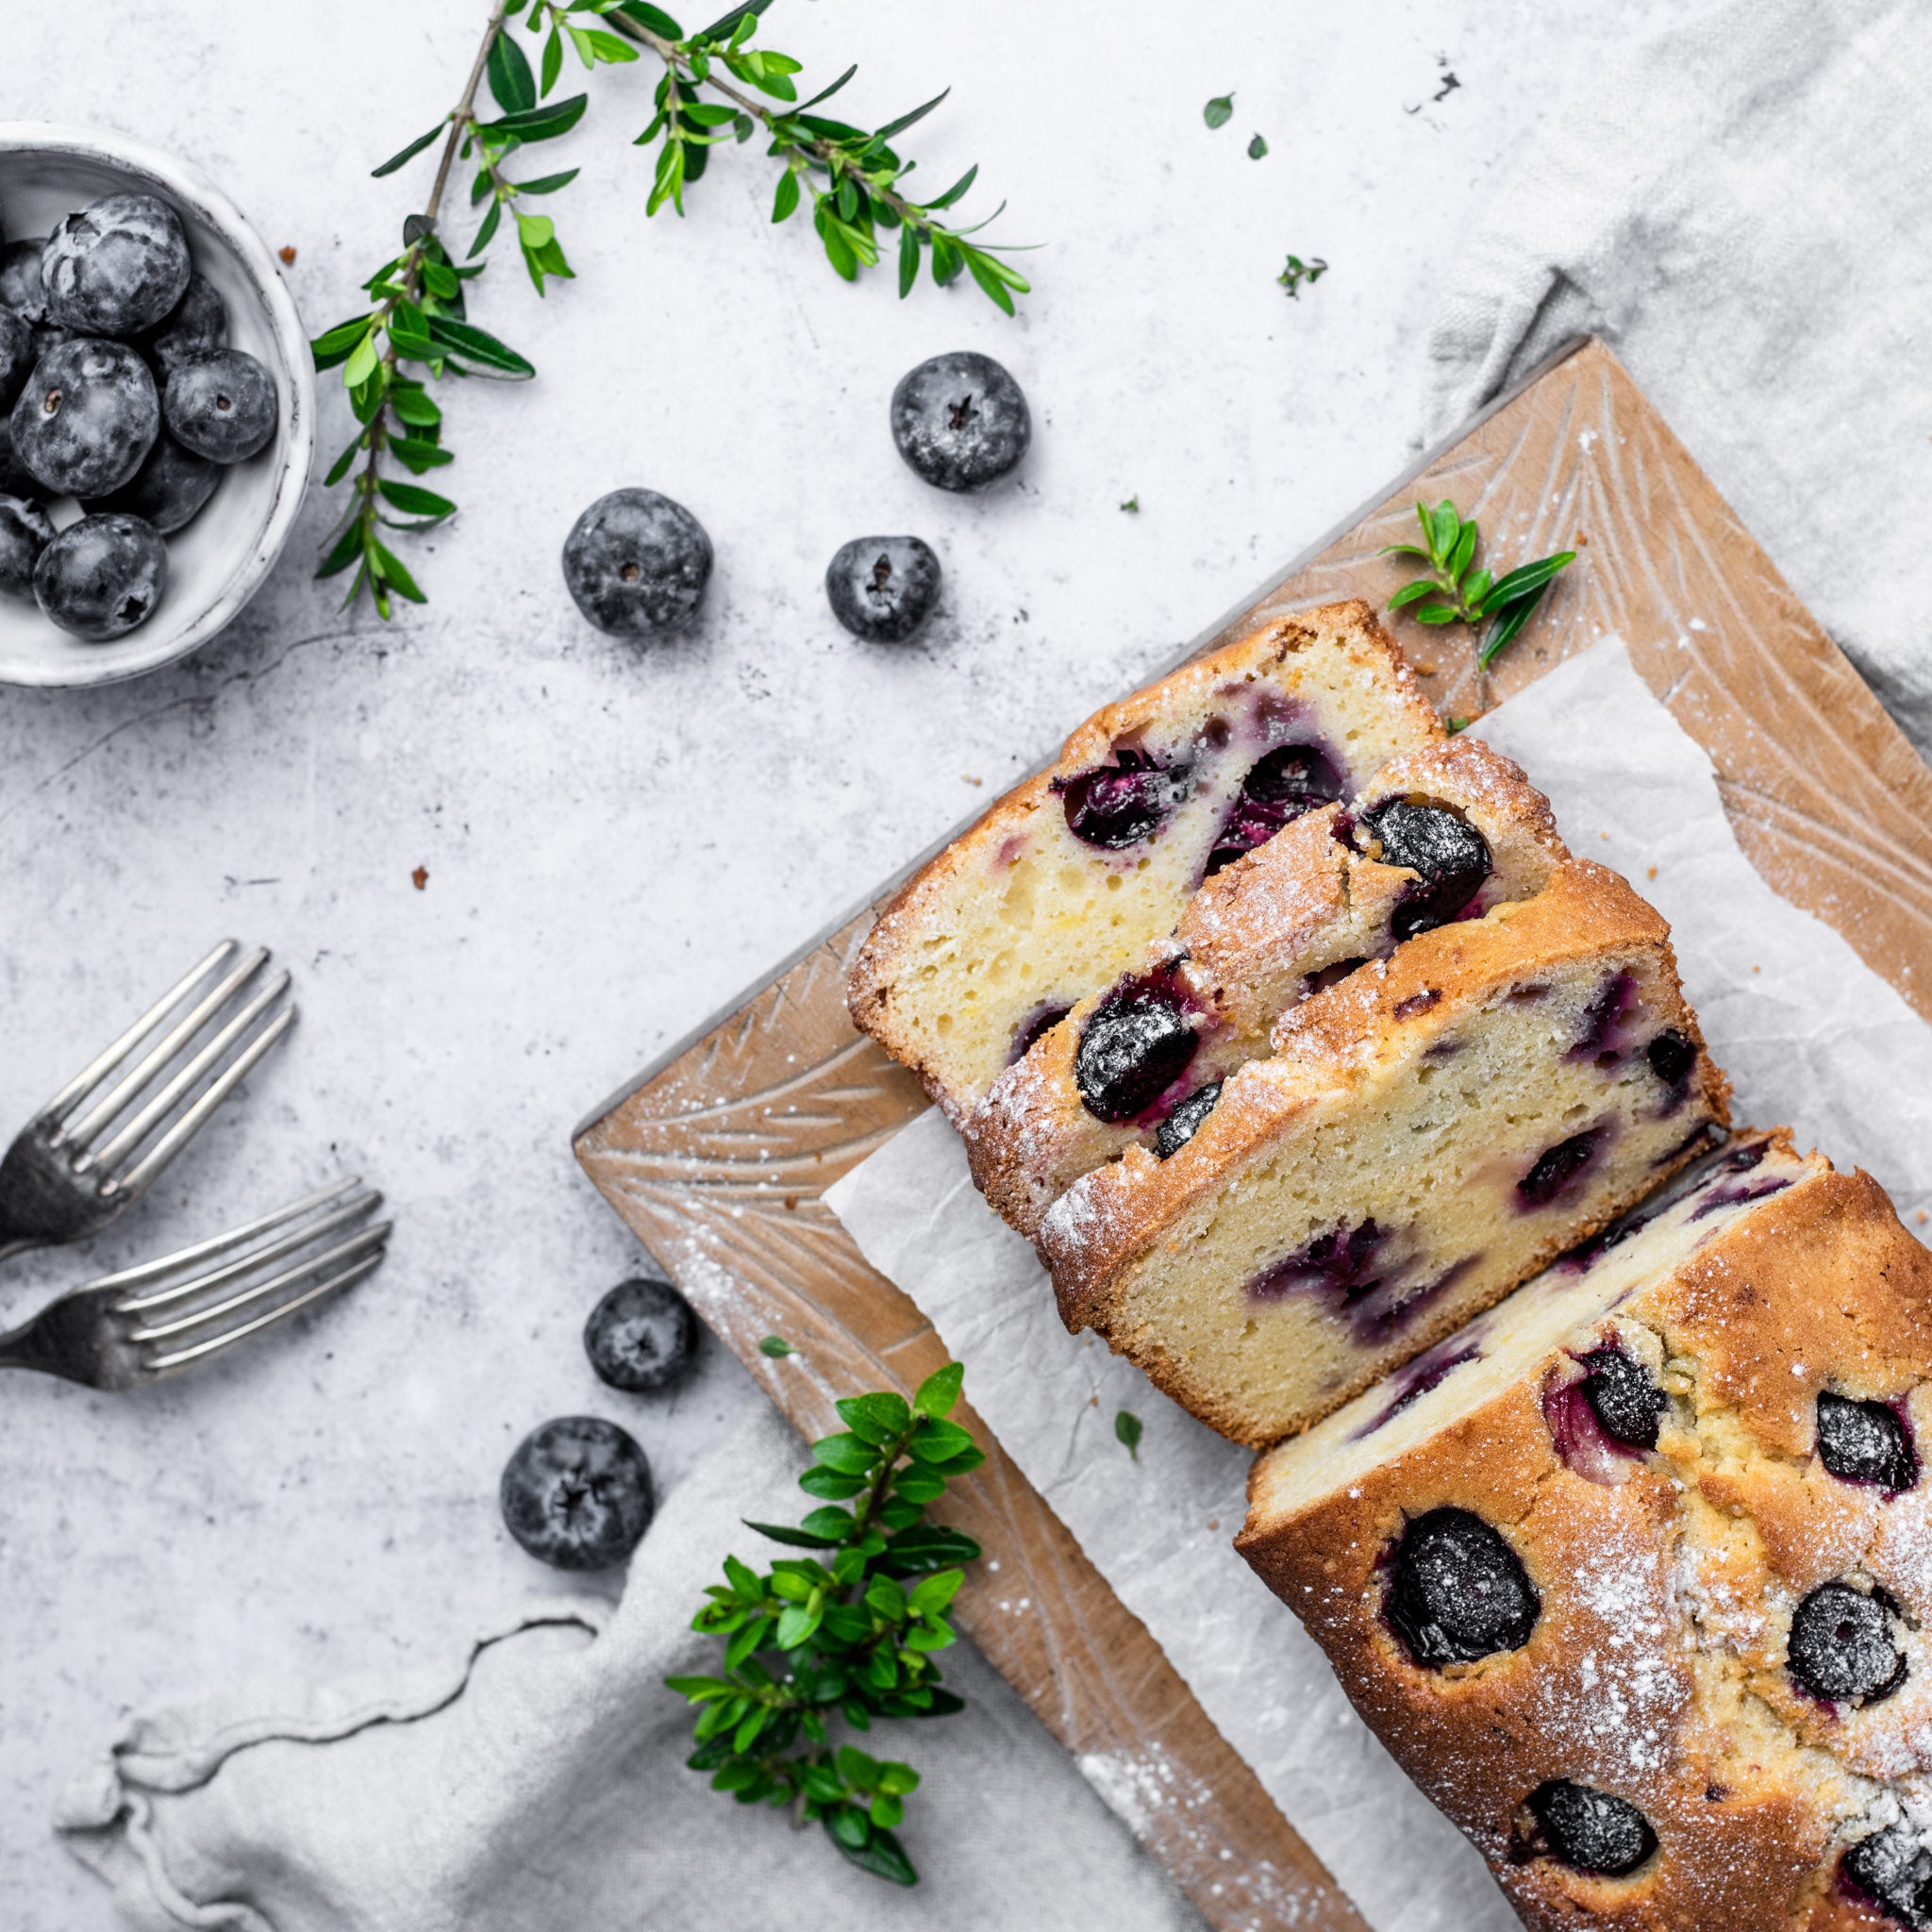 Allinsons-Blueberry-Lemon-Loaf-Cake-1-1-Baking-Mad-7_1.jpg